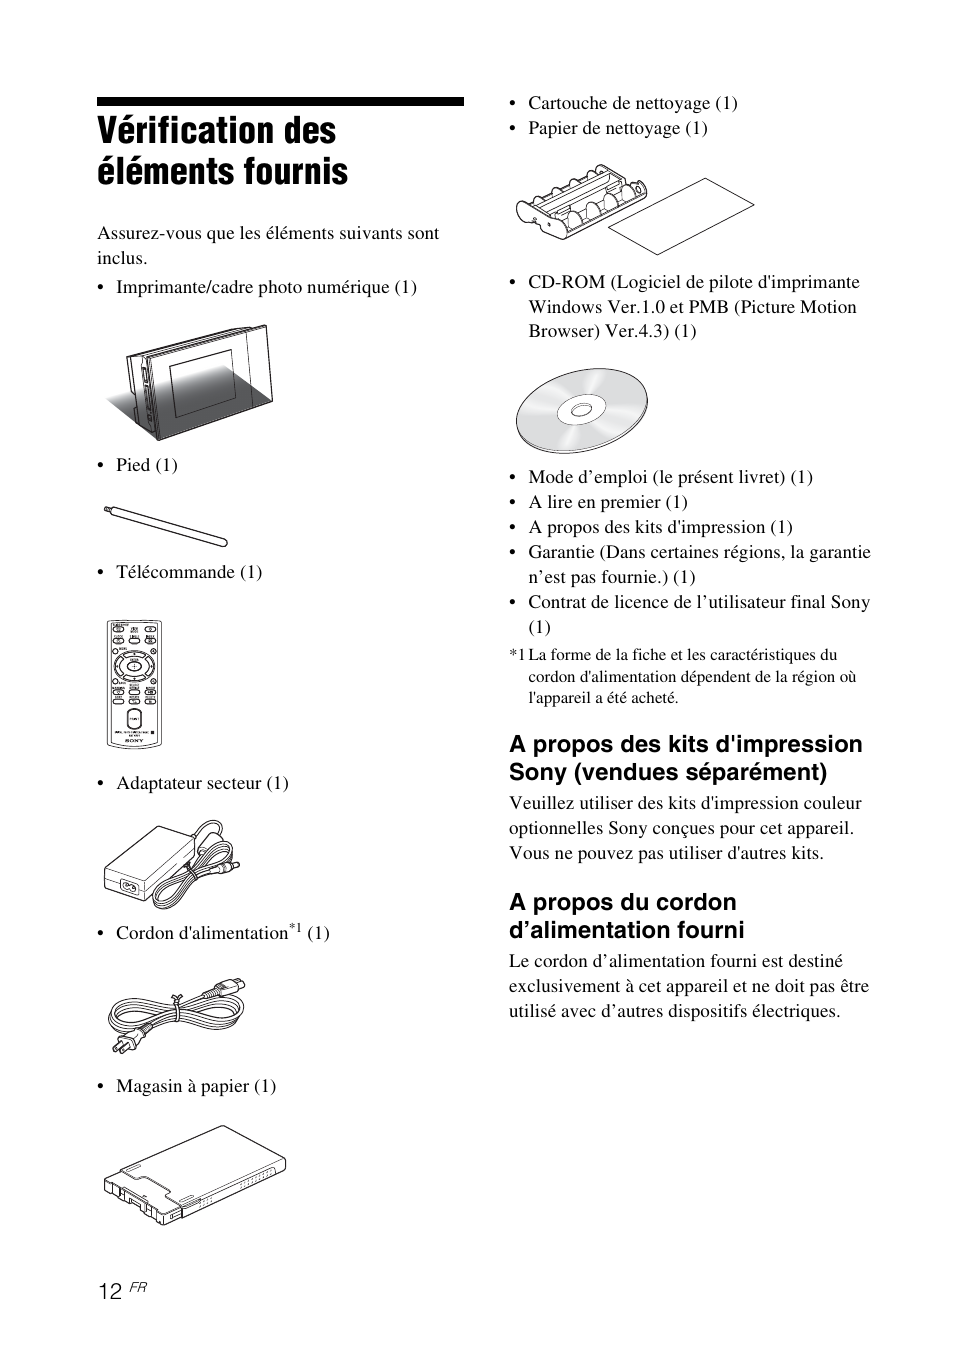 Vérification des éléments fournis, A propos du cordon d’alimentation fourni | Sony DPP-F700 Manuel d'utilisation | Page 12 / 117